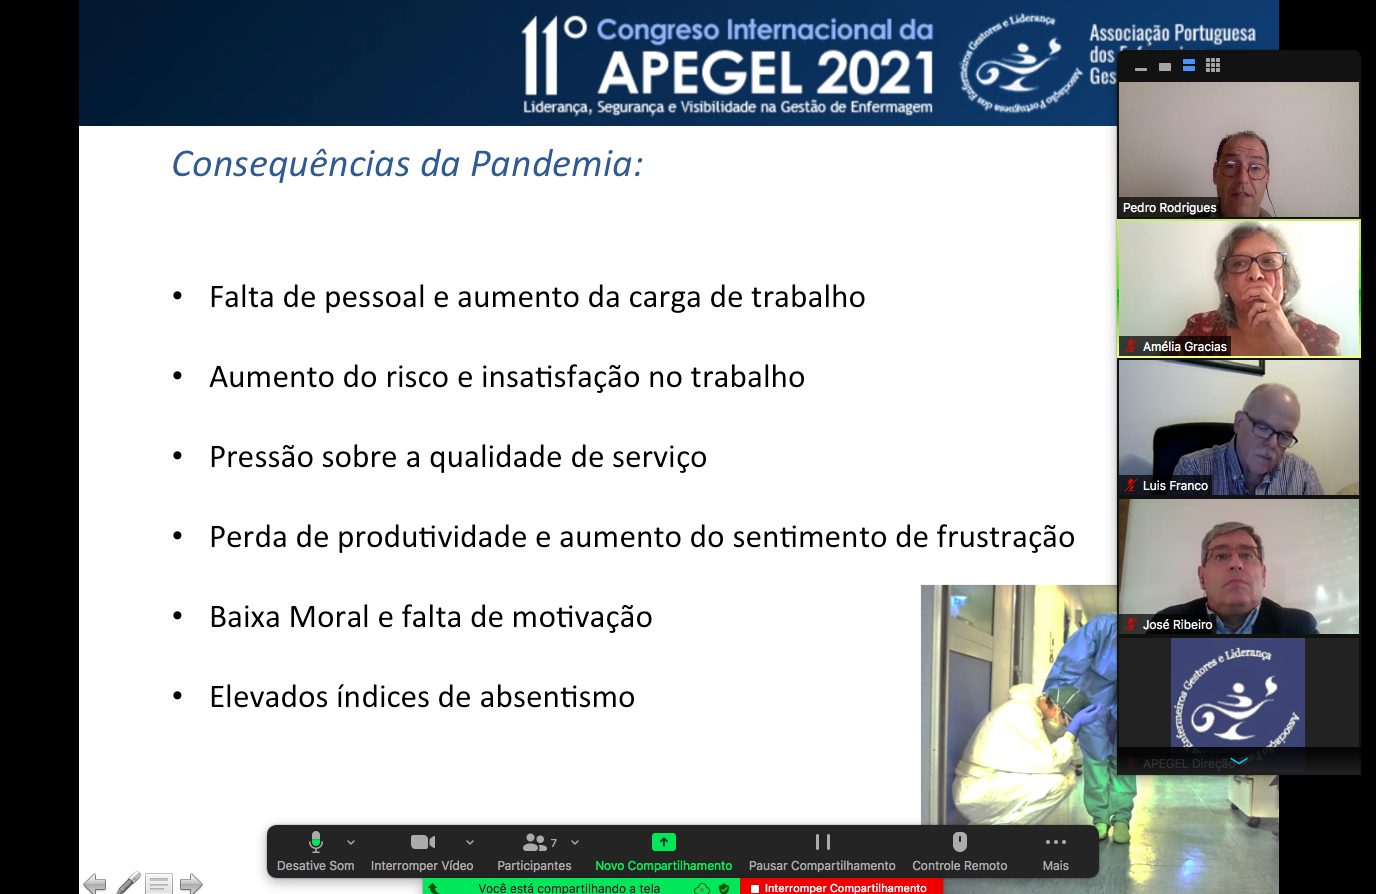 Doutor Pedro Rodrigues no 11. Congresso Internacional da APEGEL 2021